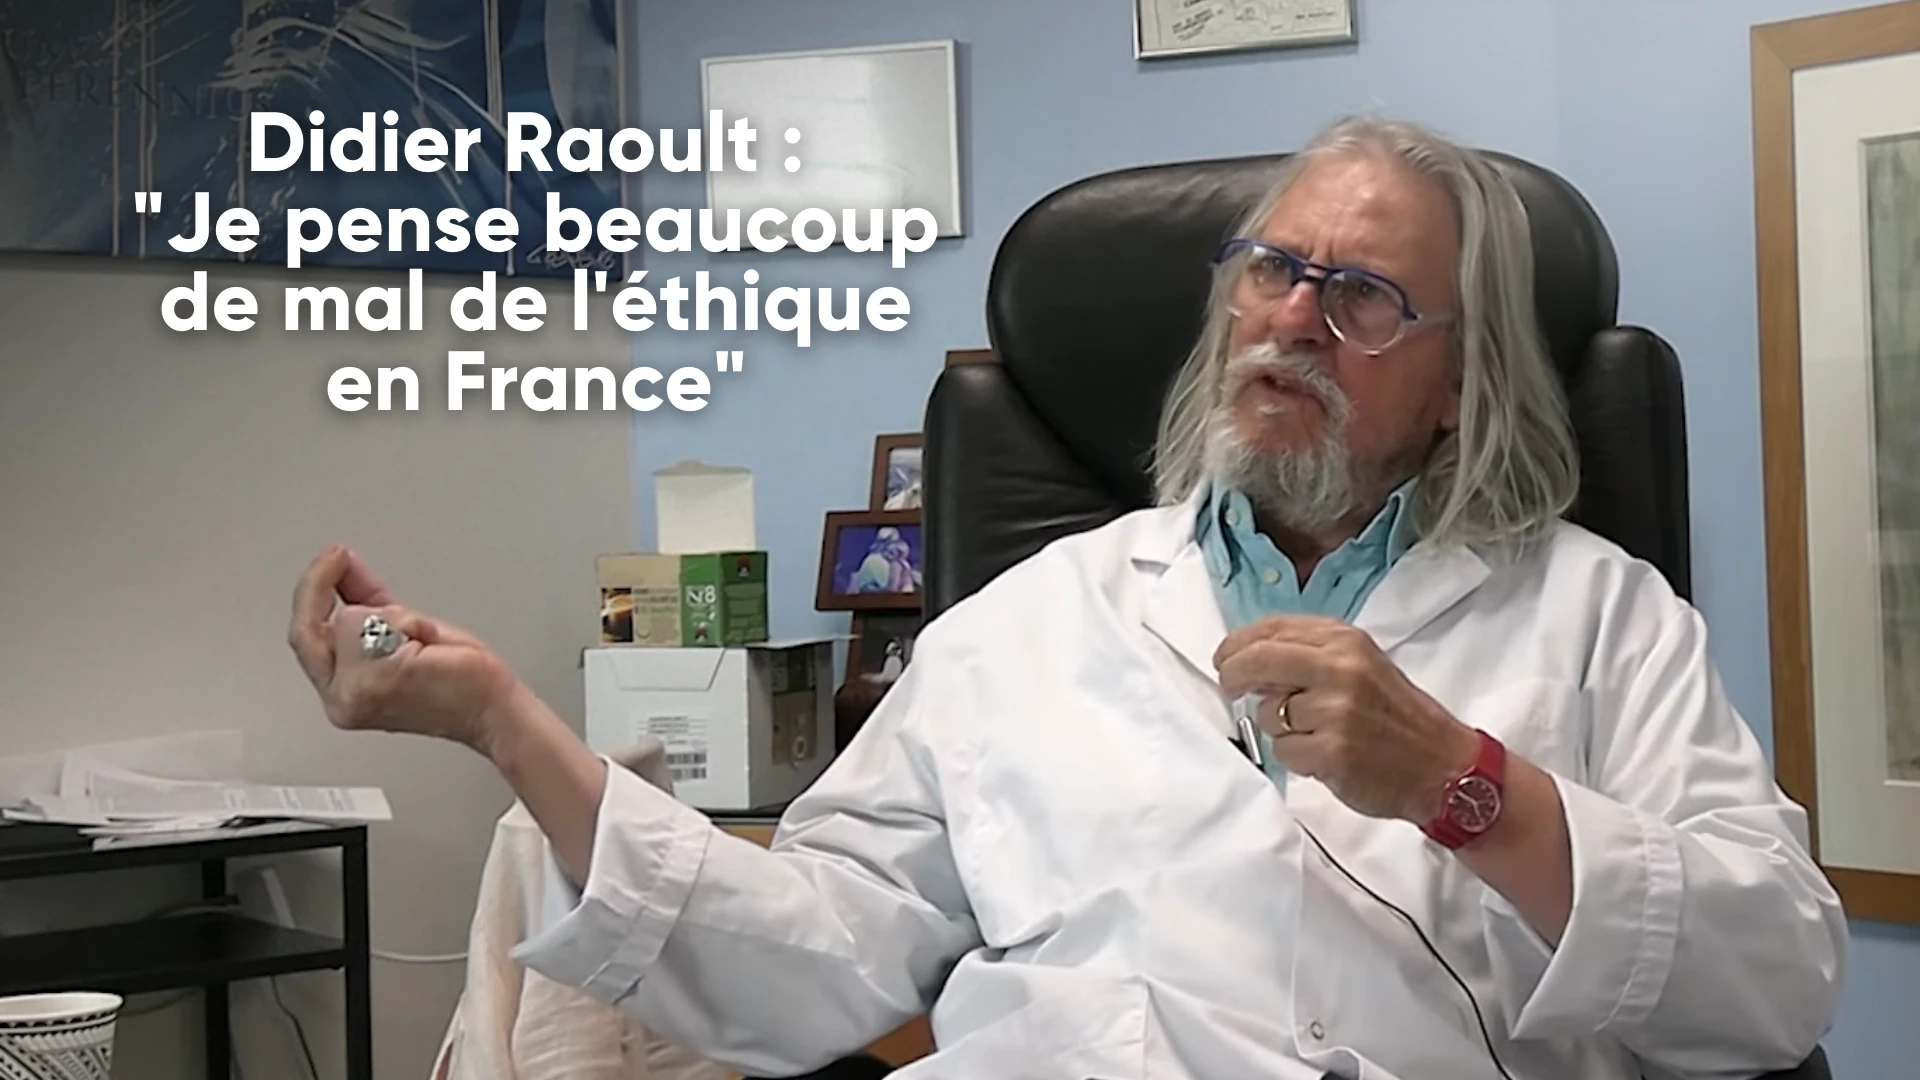 « Je pense beaucoup de mal de l’éthique en France » Didier Raoult